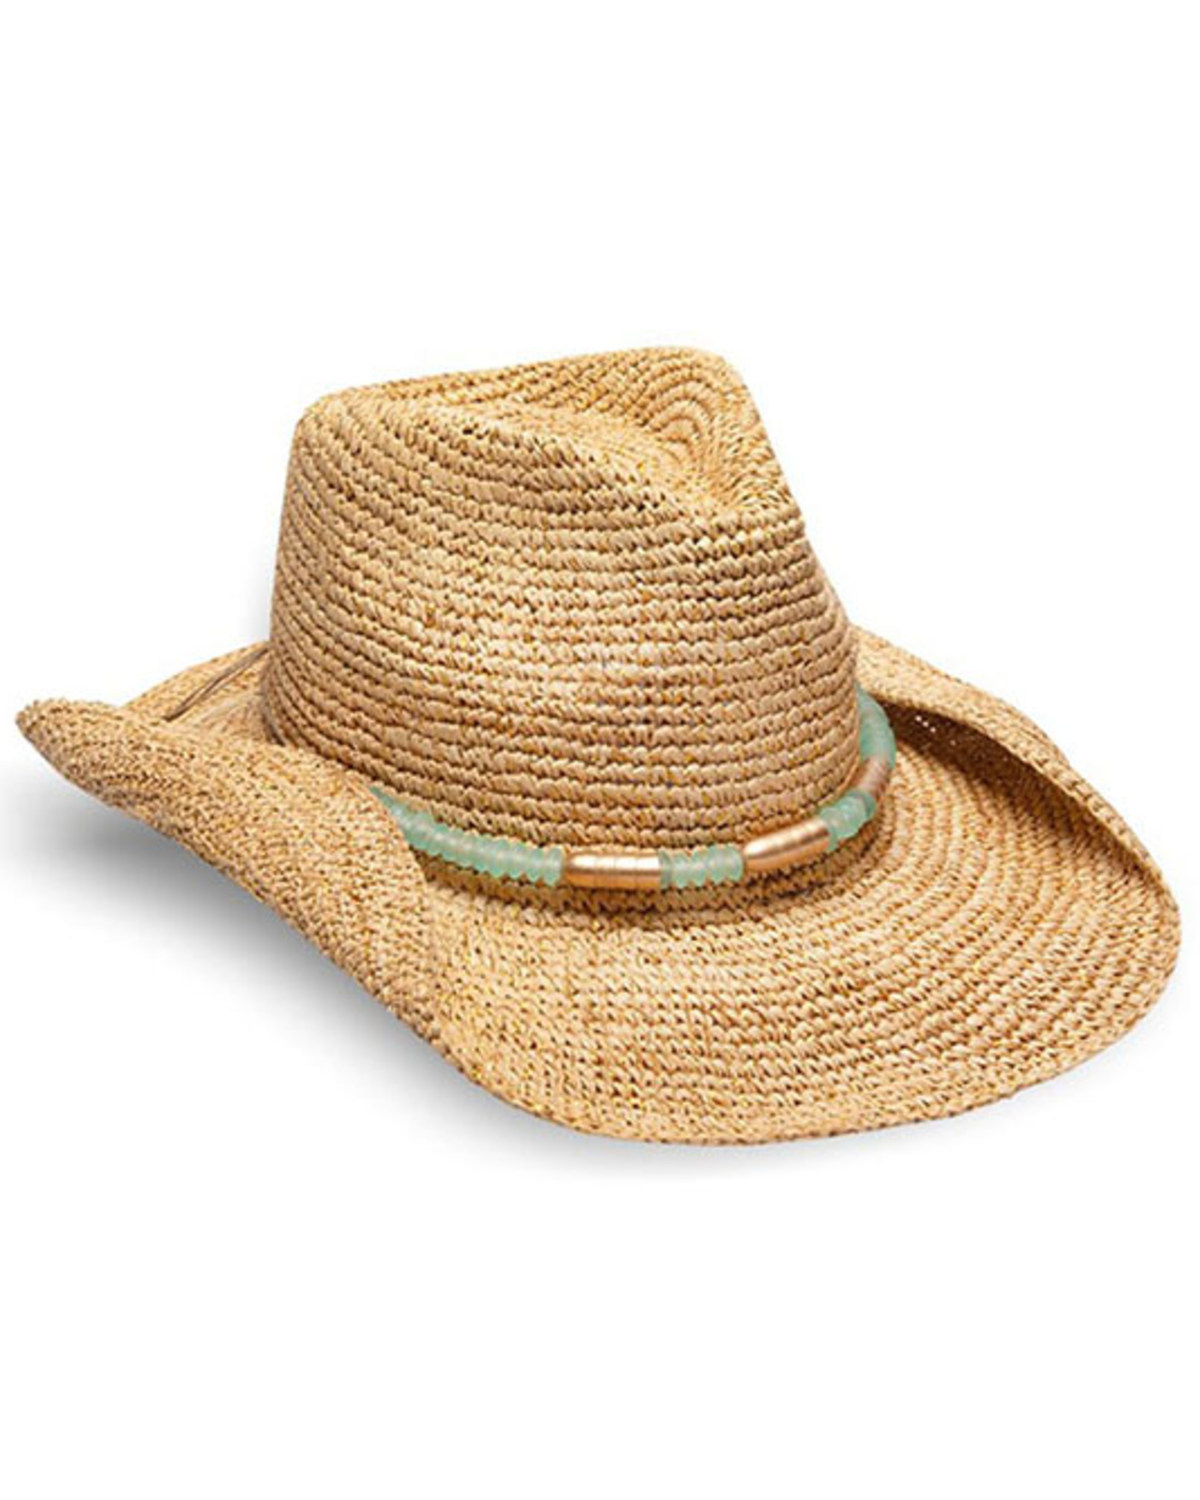 Nikki Beach Women's Chrysta Straw Cowboy Hat